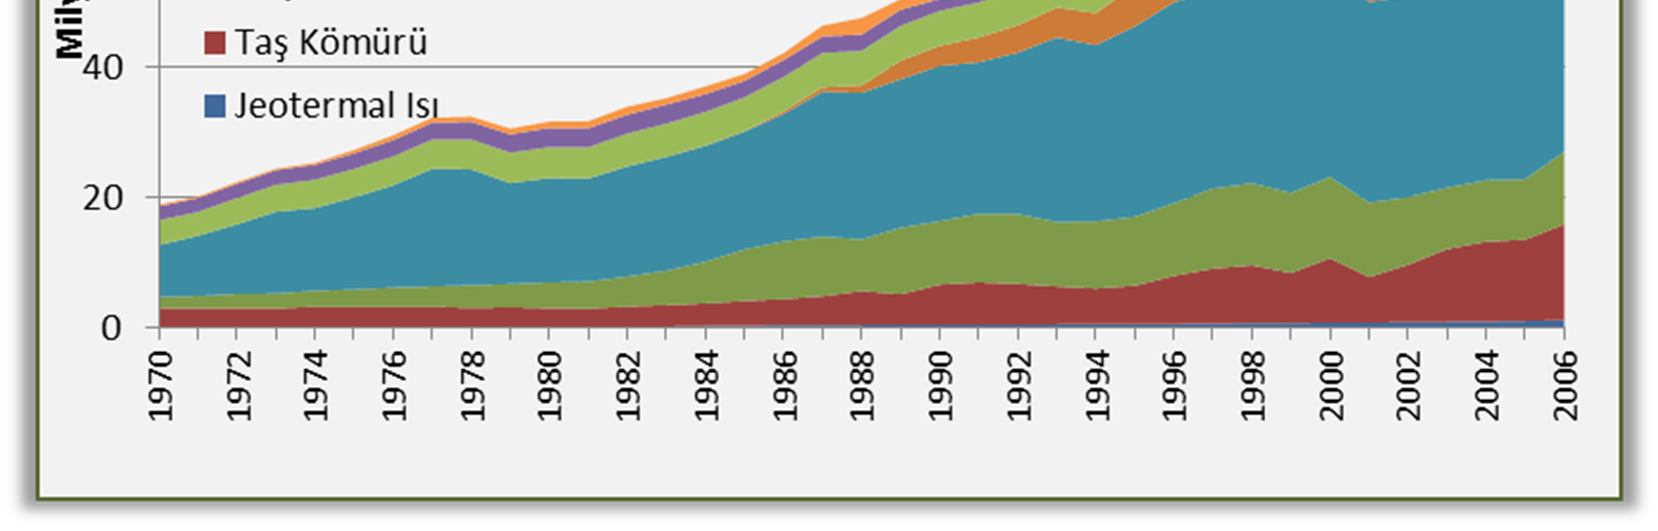 Yerli enerji üretimi 2009 da 30.328 MTEP olarak gerçekleşmiş, 2010 da ise 32.493 MTEP e yükselmiştir. Bu değerin % 49,3 ünü linyit ve çok az miktarda asfaltit oluşturmaktadır.